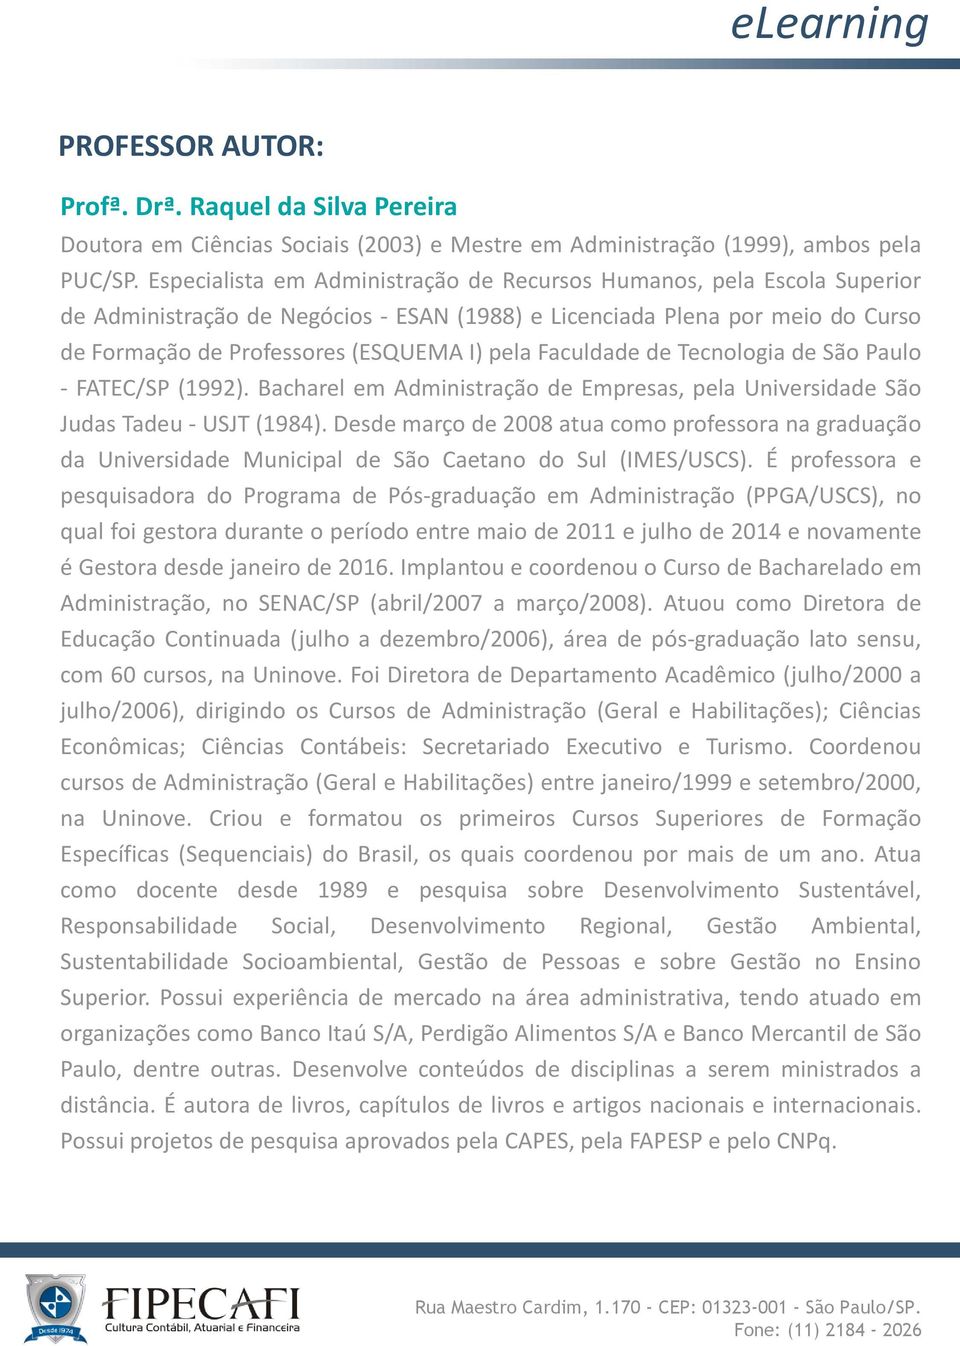 Faculdade de Tecnologia de São Paulo - FATEC/SP (1992). Bacharel em Administração de Empresas, pela Universidade São Judas Tadeu - USJT (1984).